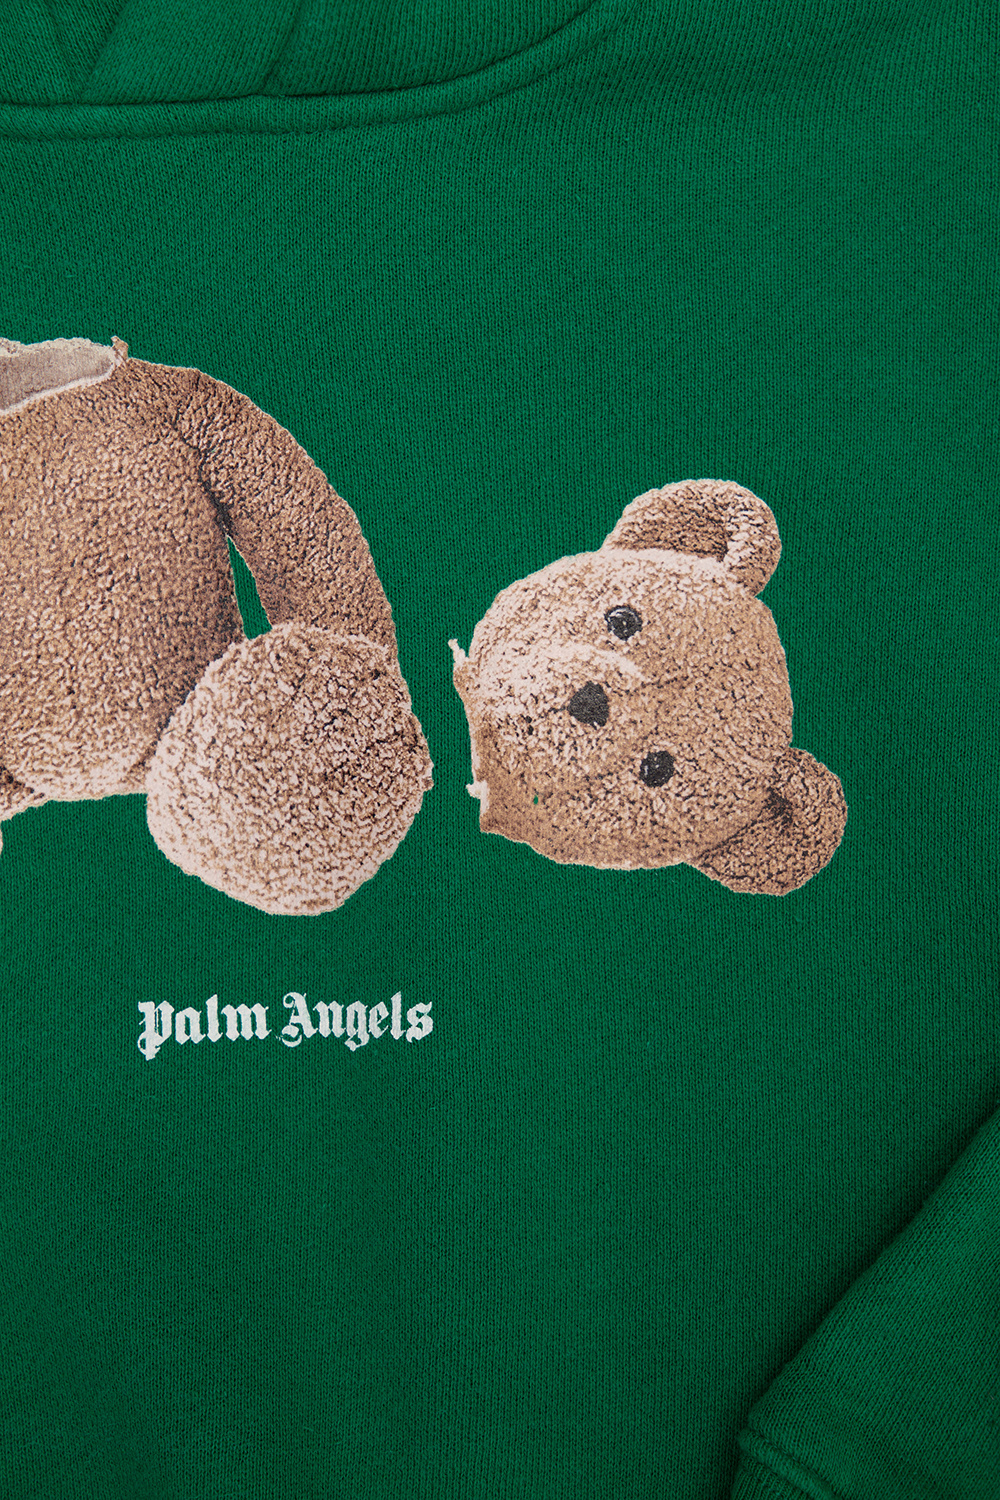 Palm Angels Kids Printed hoodie